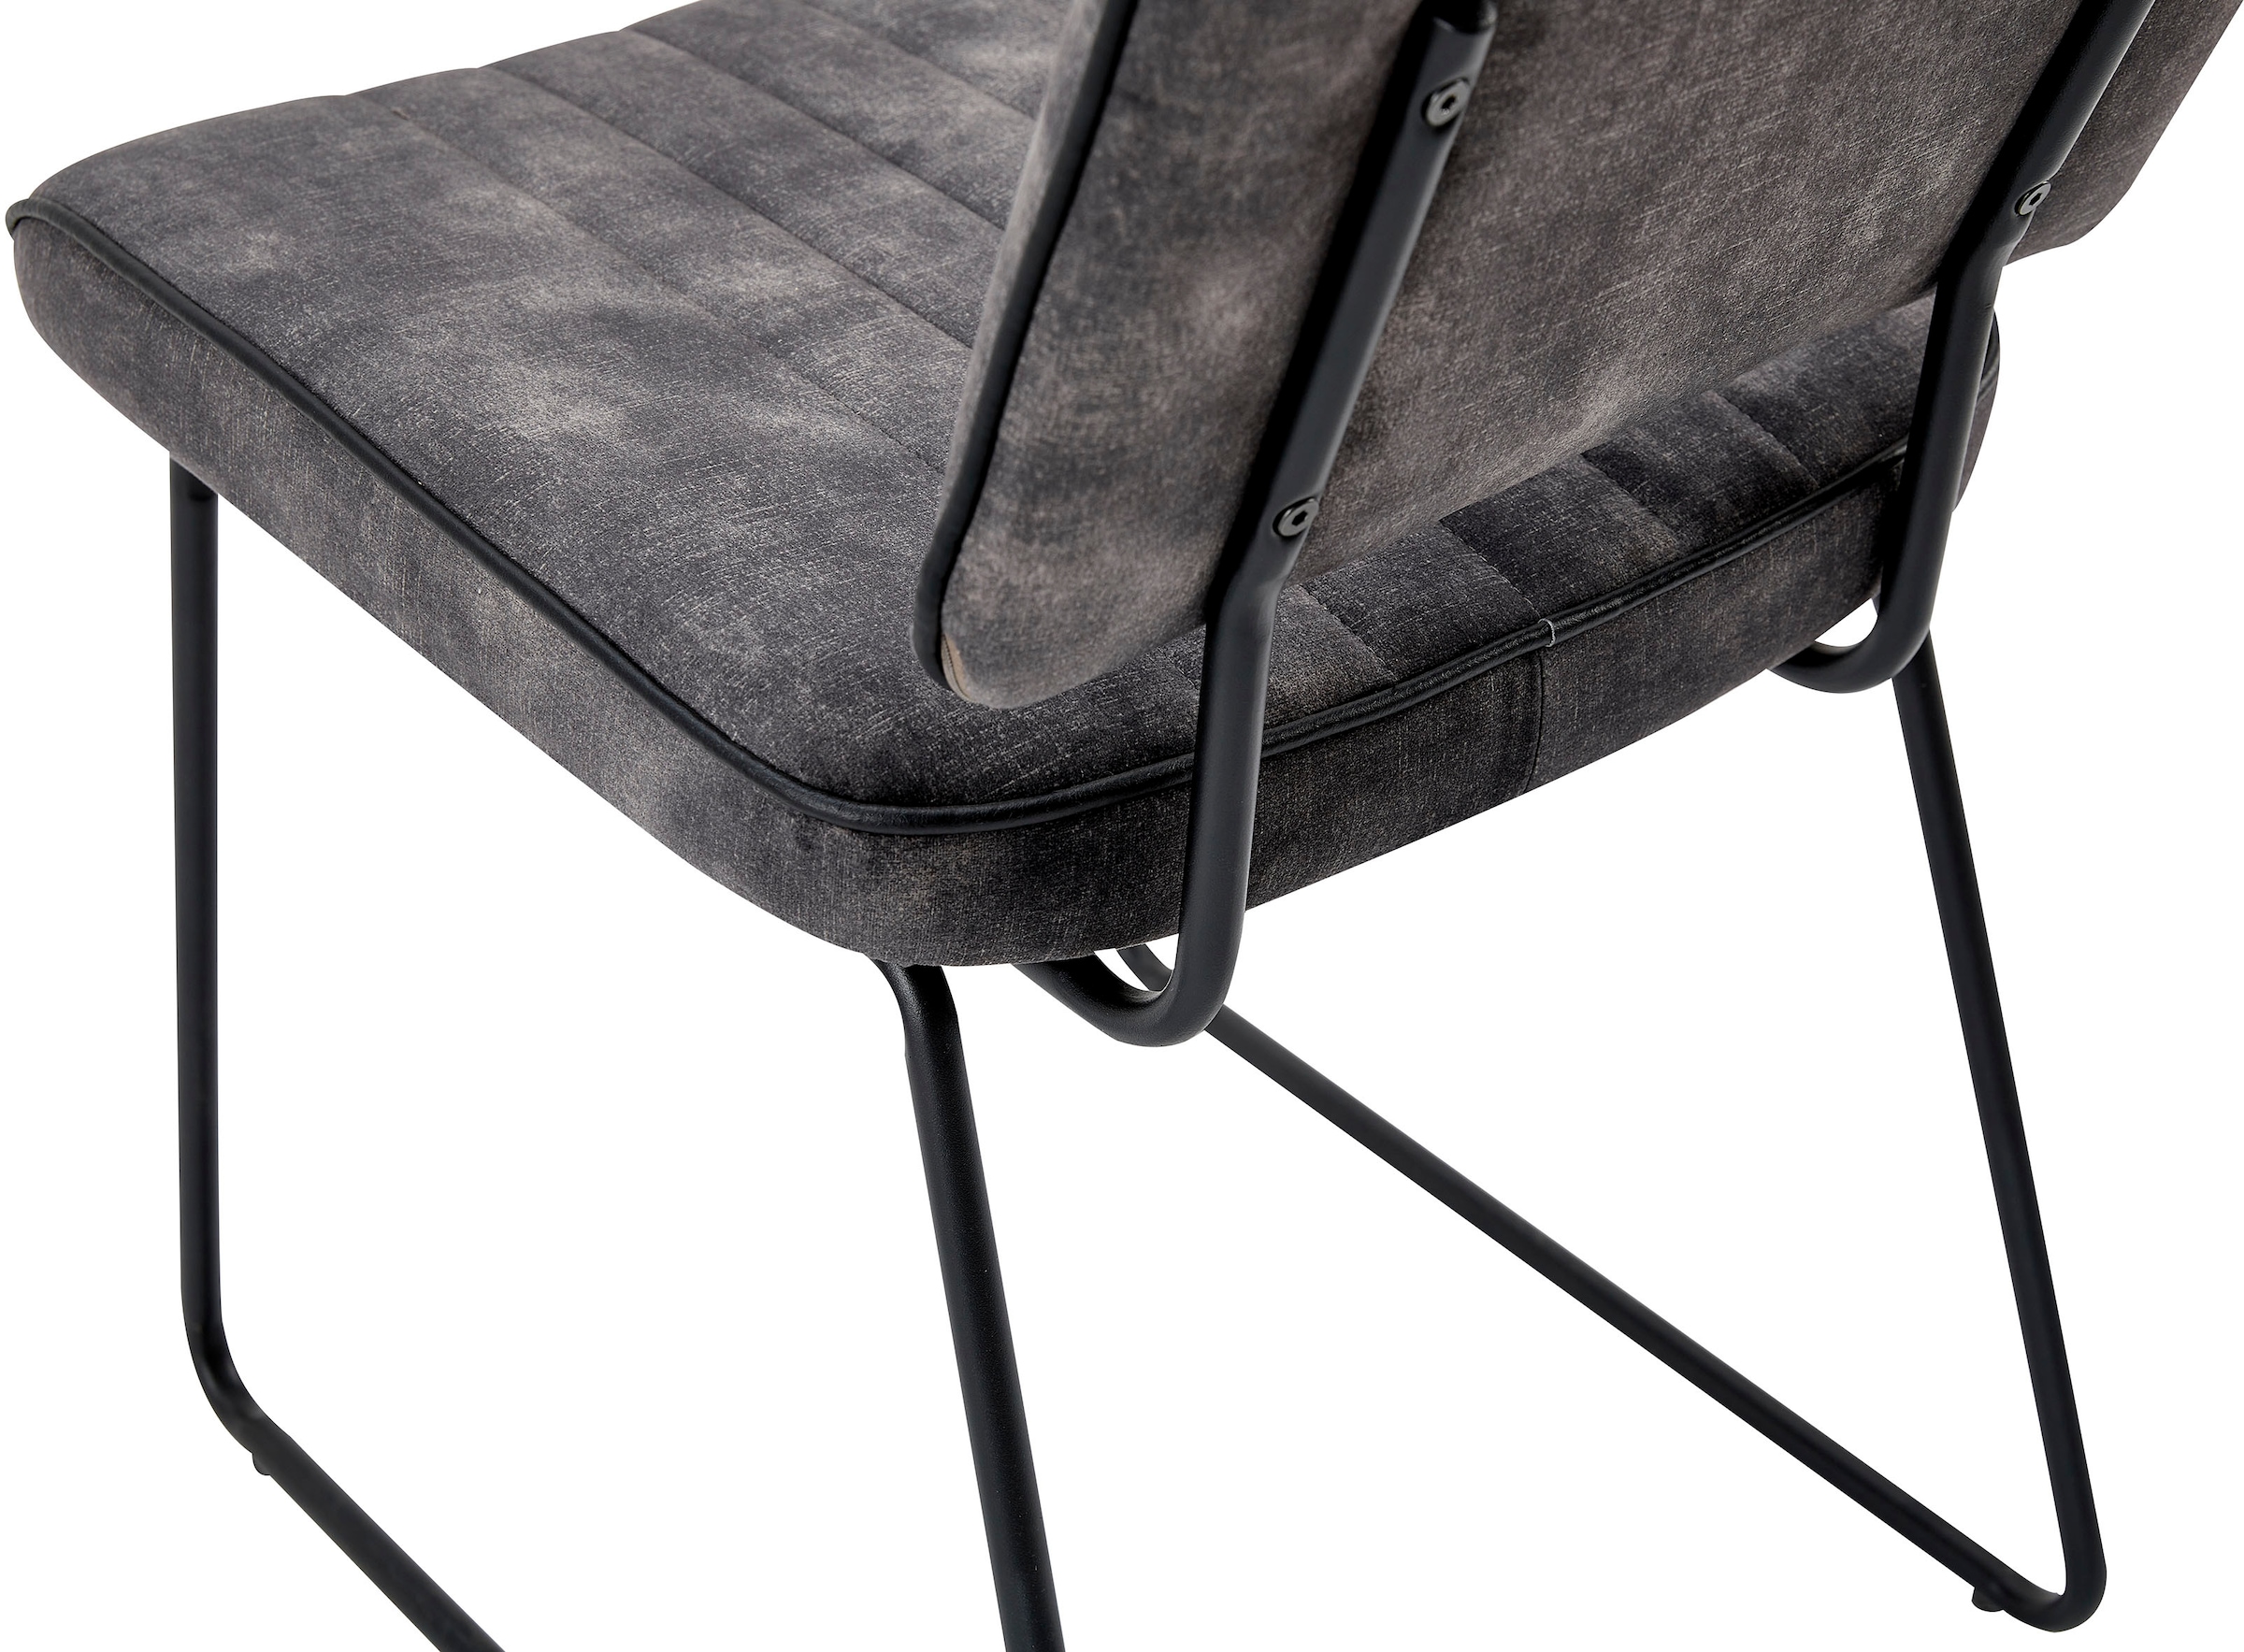 byLIVING Kufenstuhl »Liam 4er-Set«, (Set), 4 St., Samtvelours-Vintage, moderner Stuhl im praktischen 4er-Set mit Metallgestell